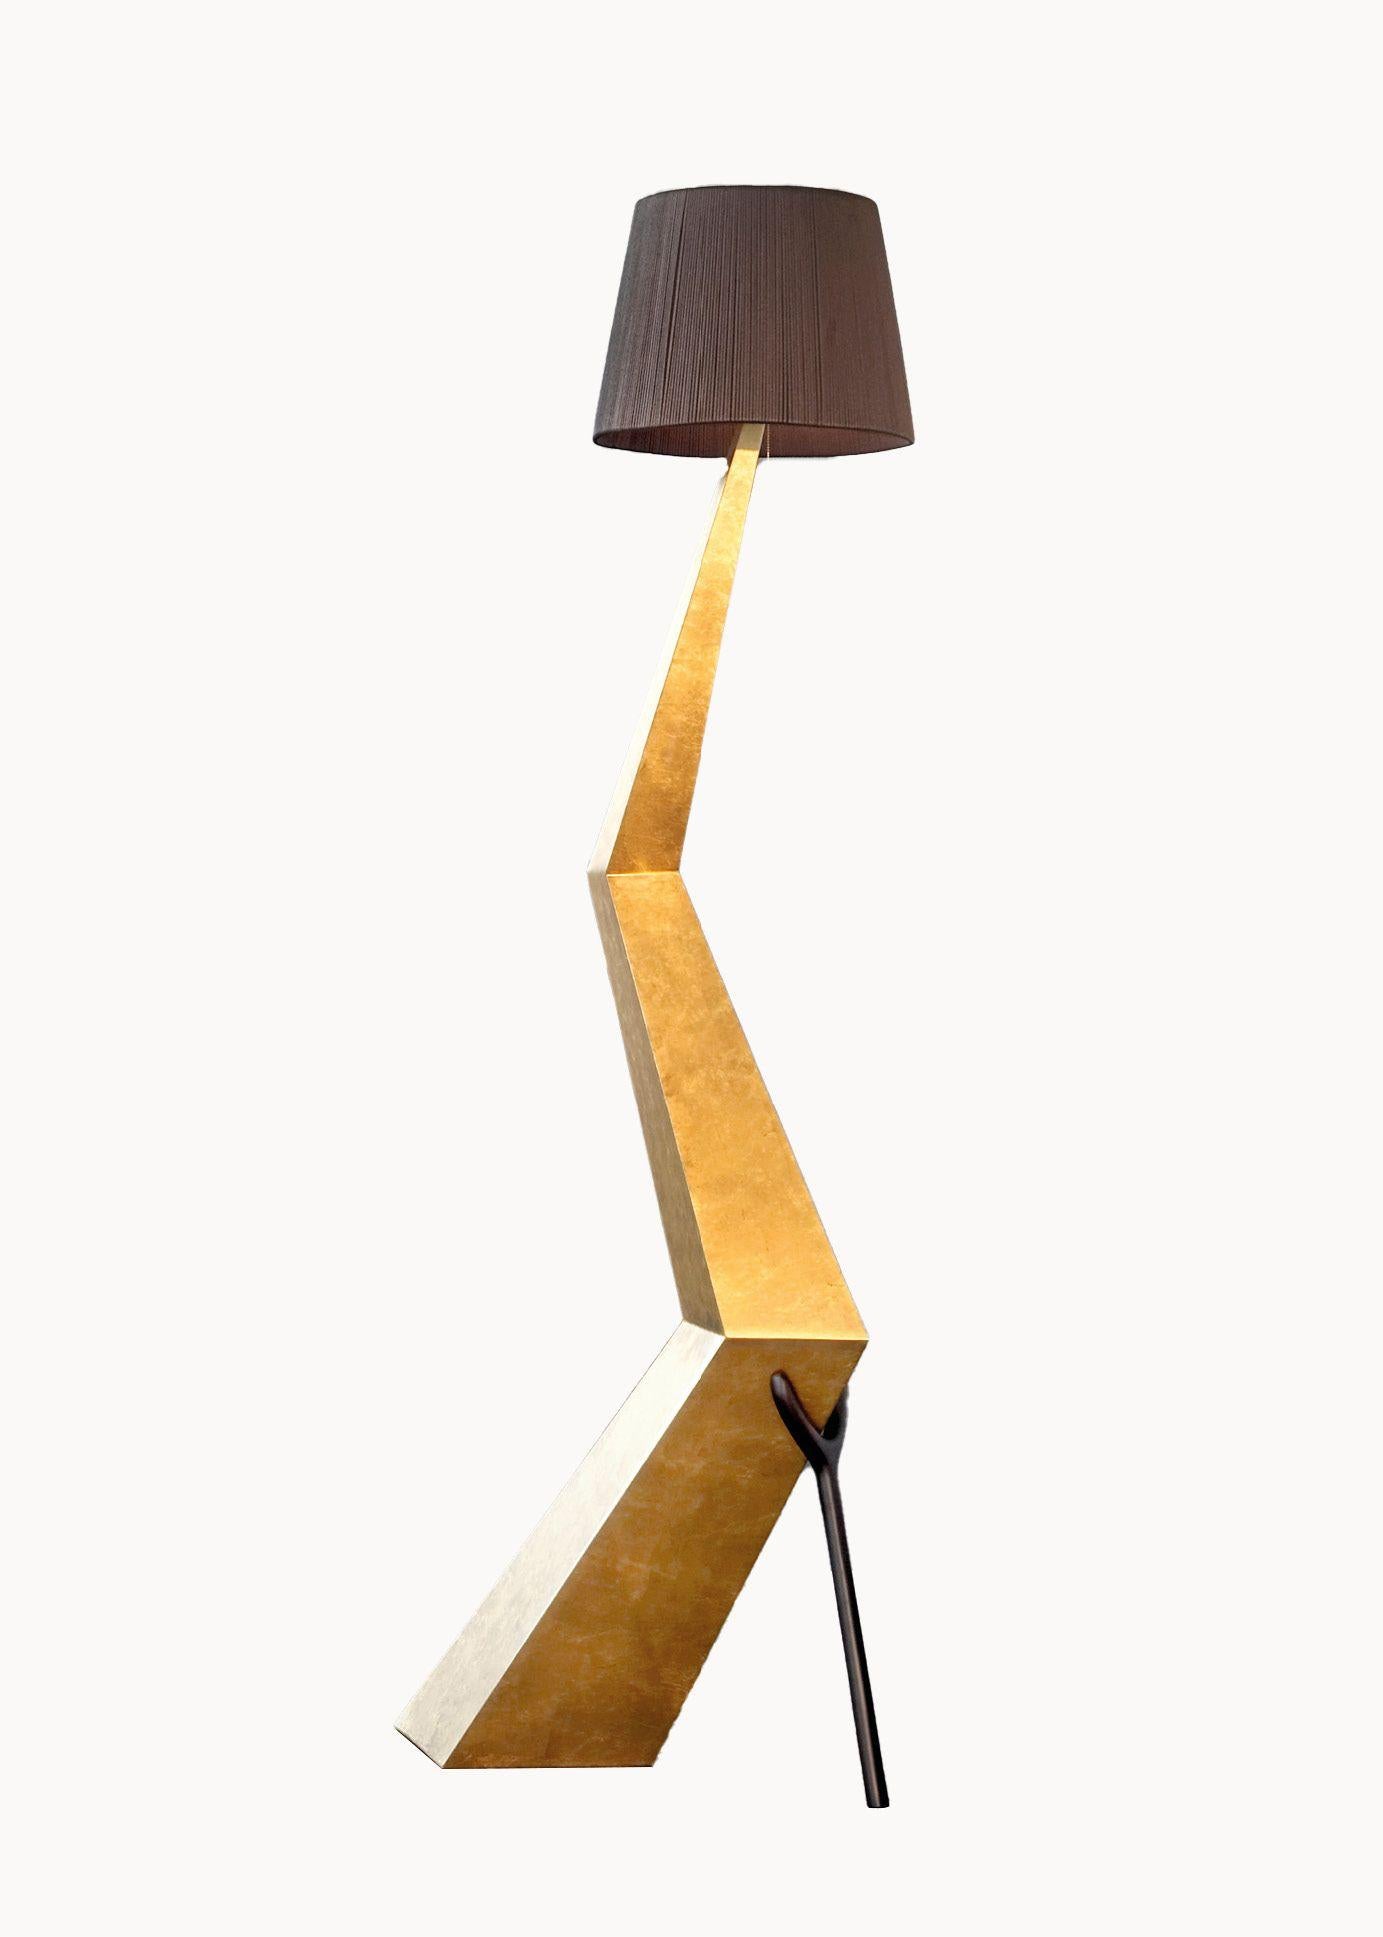 Bracelli-Lampe, entworfen von Dali, hergestellt von BD im Jahr 2009.

Paneelstruktur mit feinem Blattgold überzogen und nachgedunkelt.
Lampenschirm in schwarzer Farbe Baumwolle und Viskose.

Maße: 37 x 64 x H.180 cm 

Limitierte Auflage von